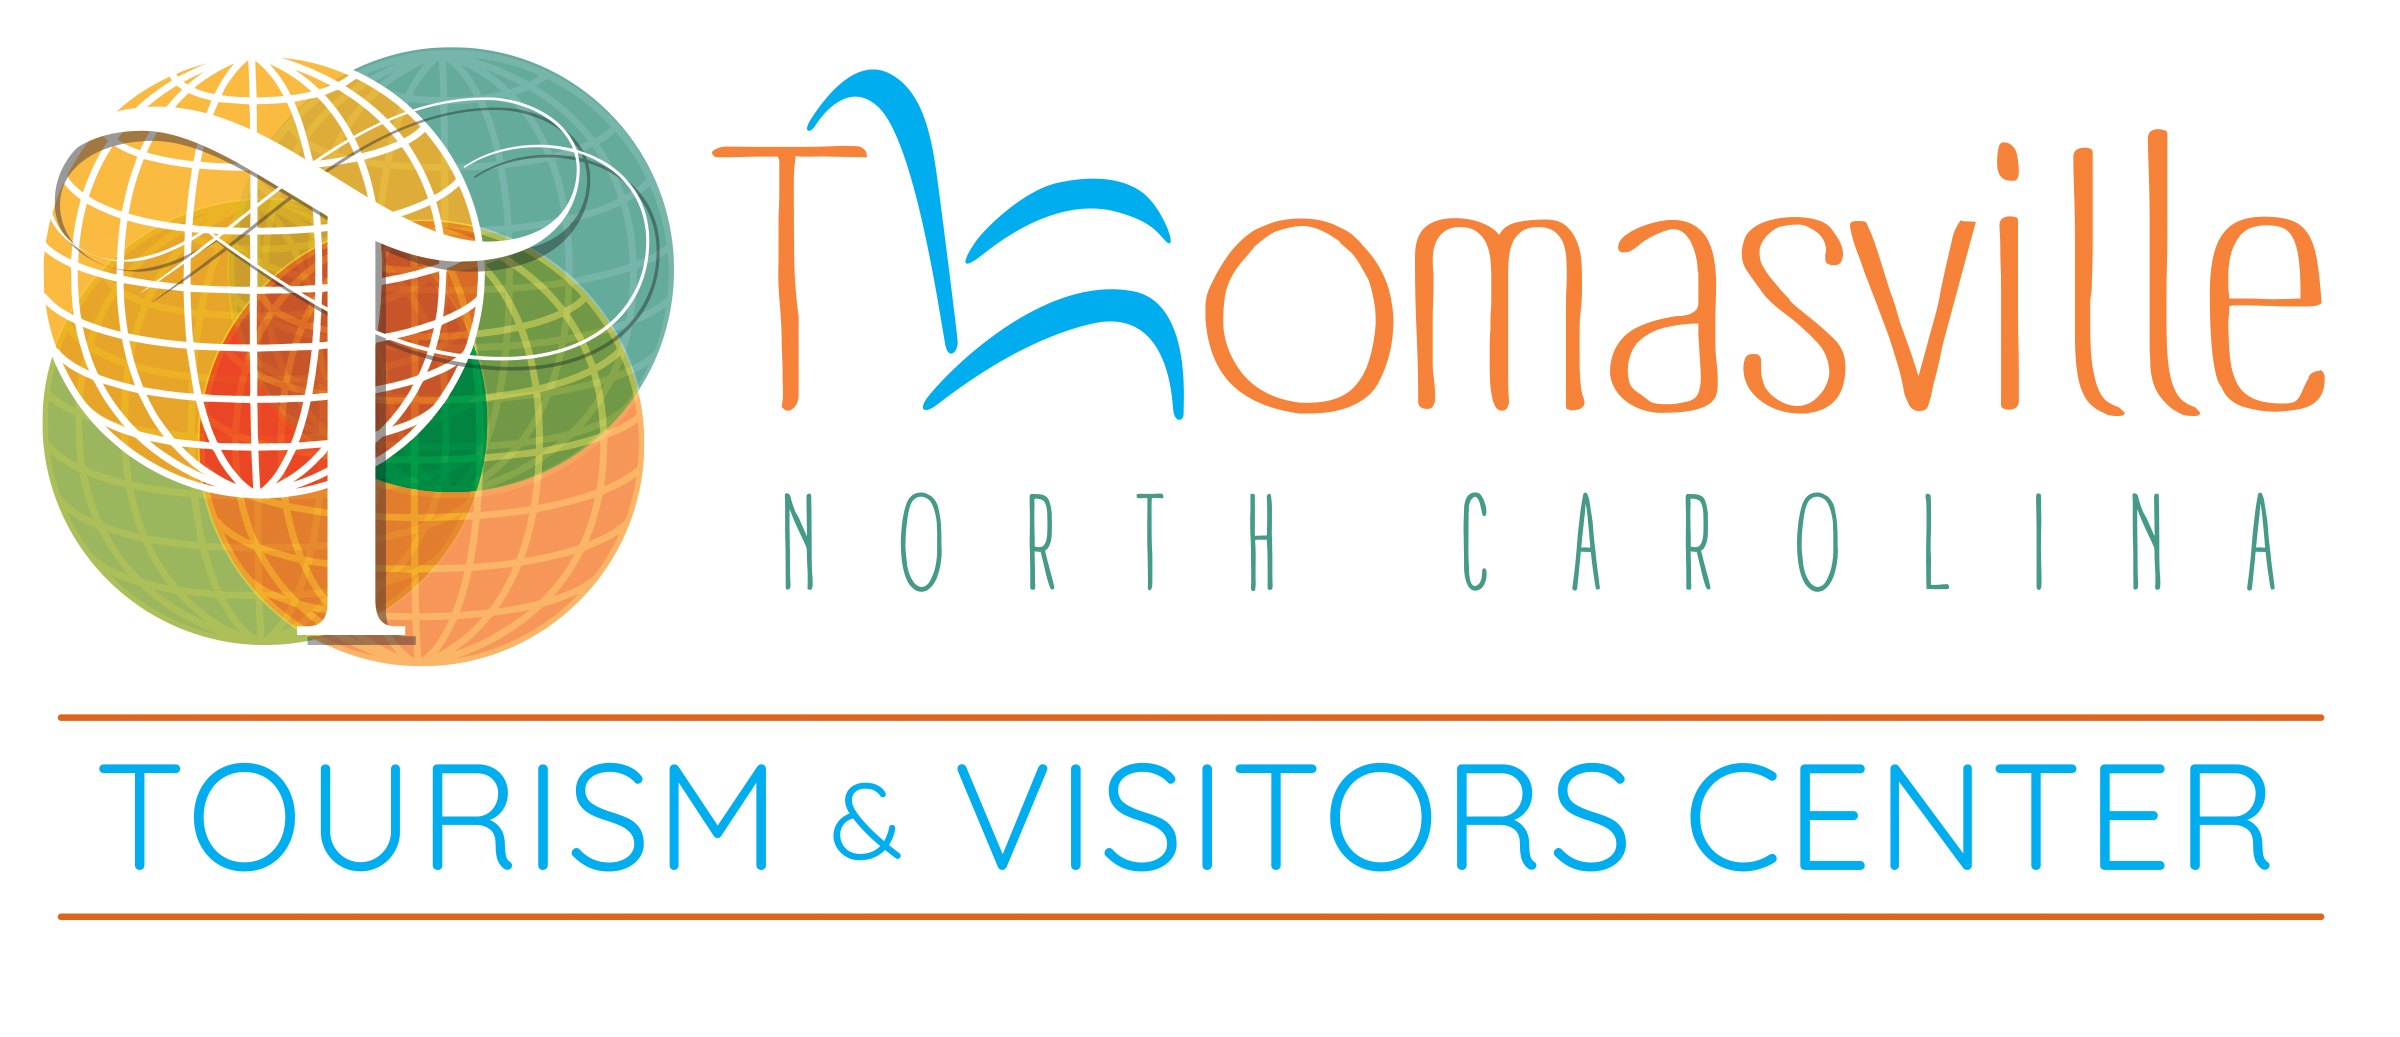 Tourism & Visitors Center Logo (Full Color) transparent background no tagline.png